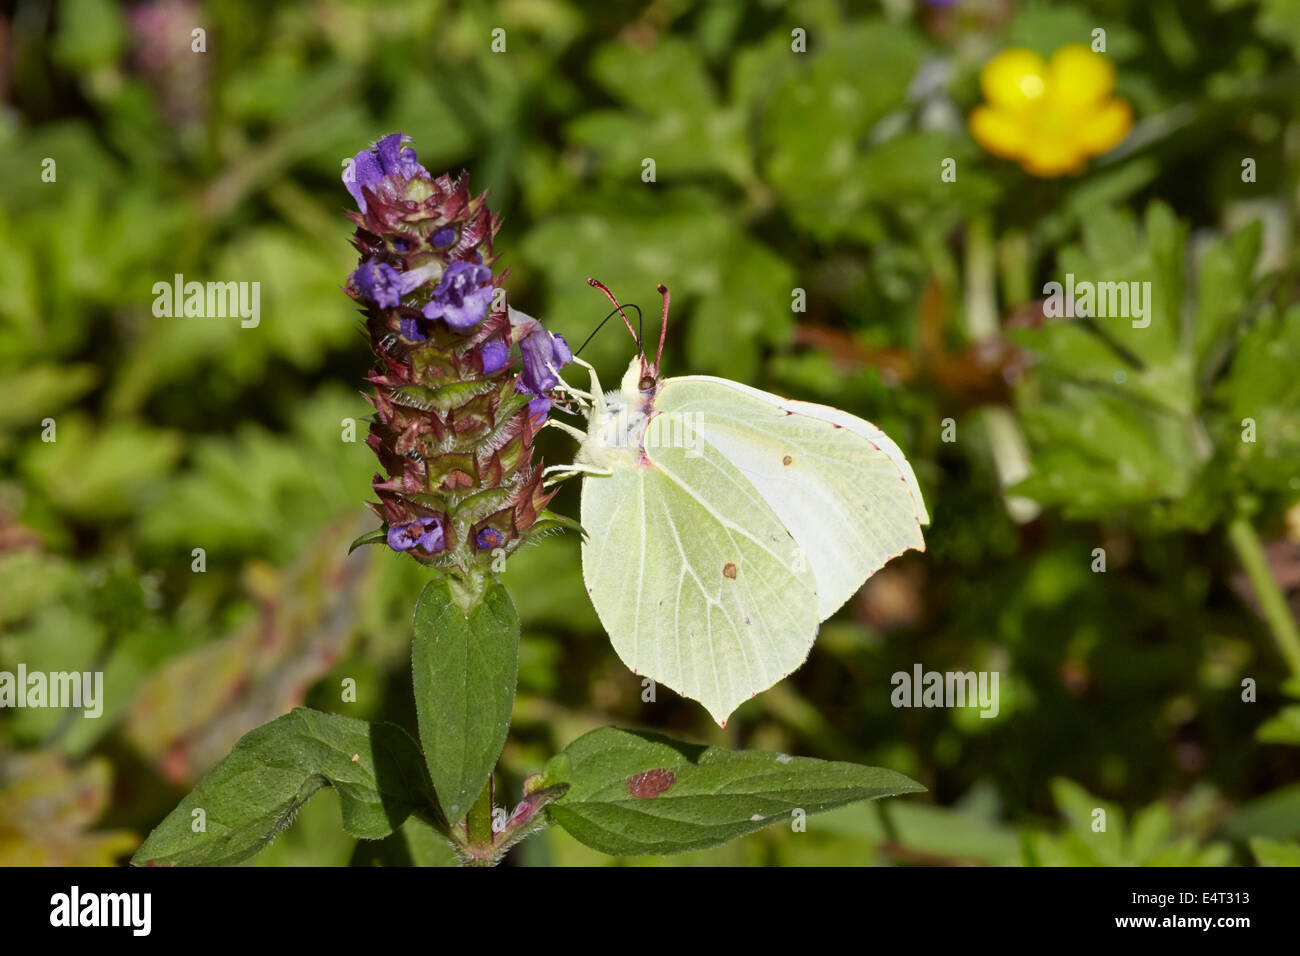 Brimstone butterfly (female) feeding on Bugle flower. Bookham Common, Surrey, England. Stock Photo